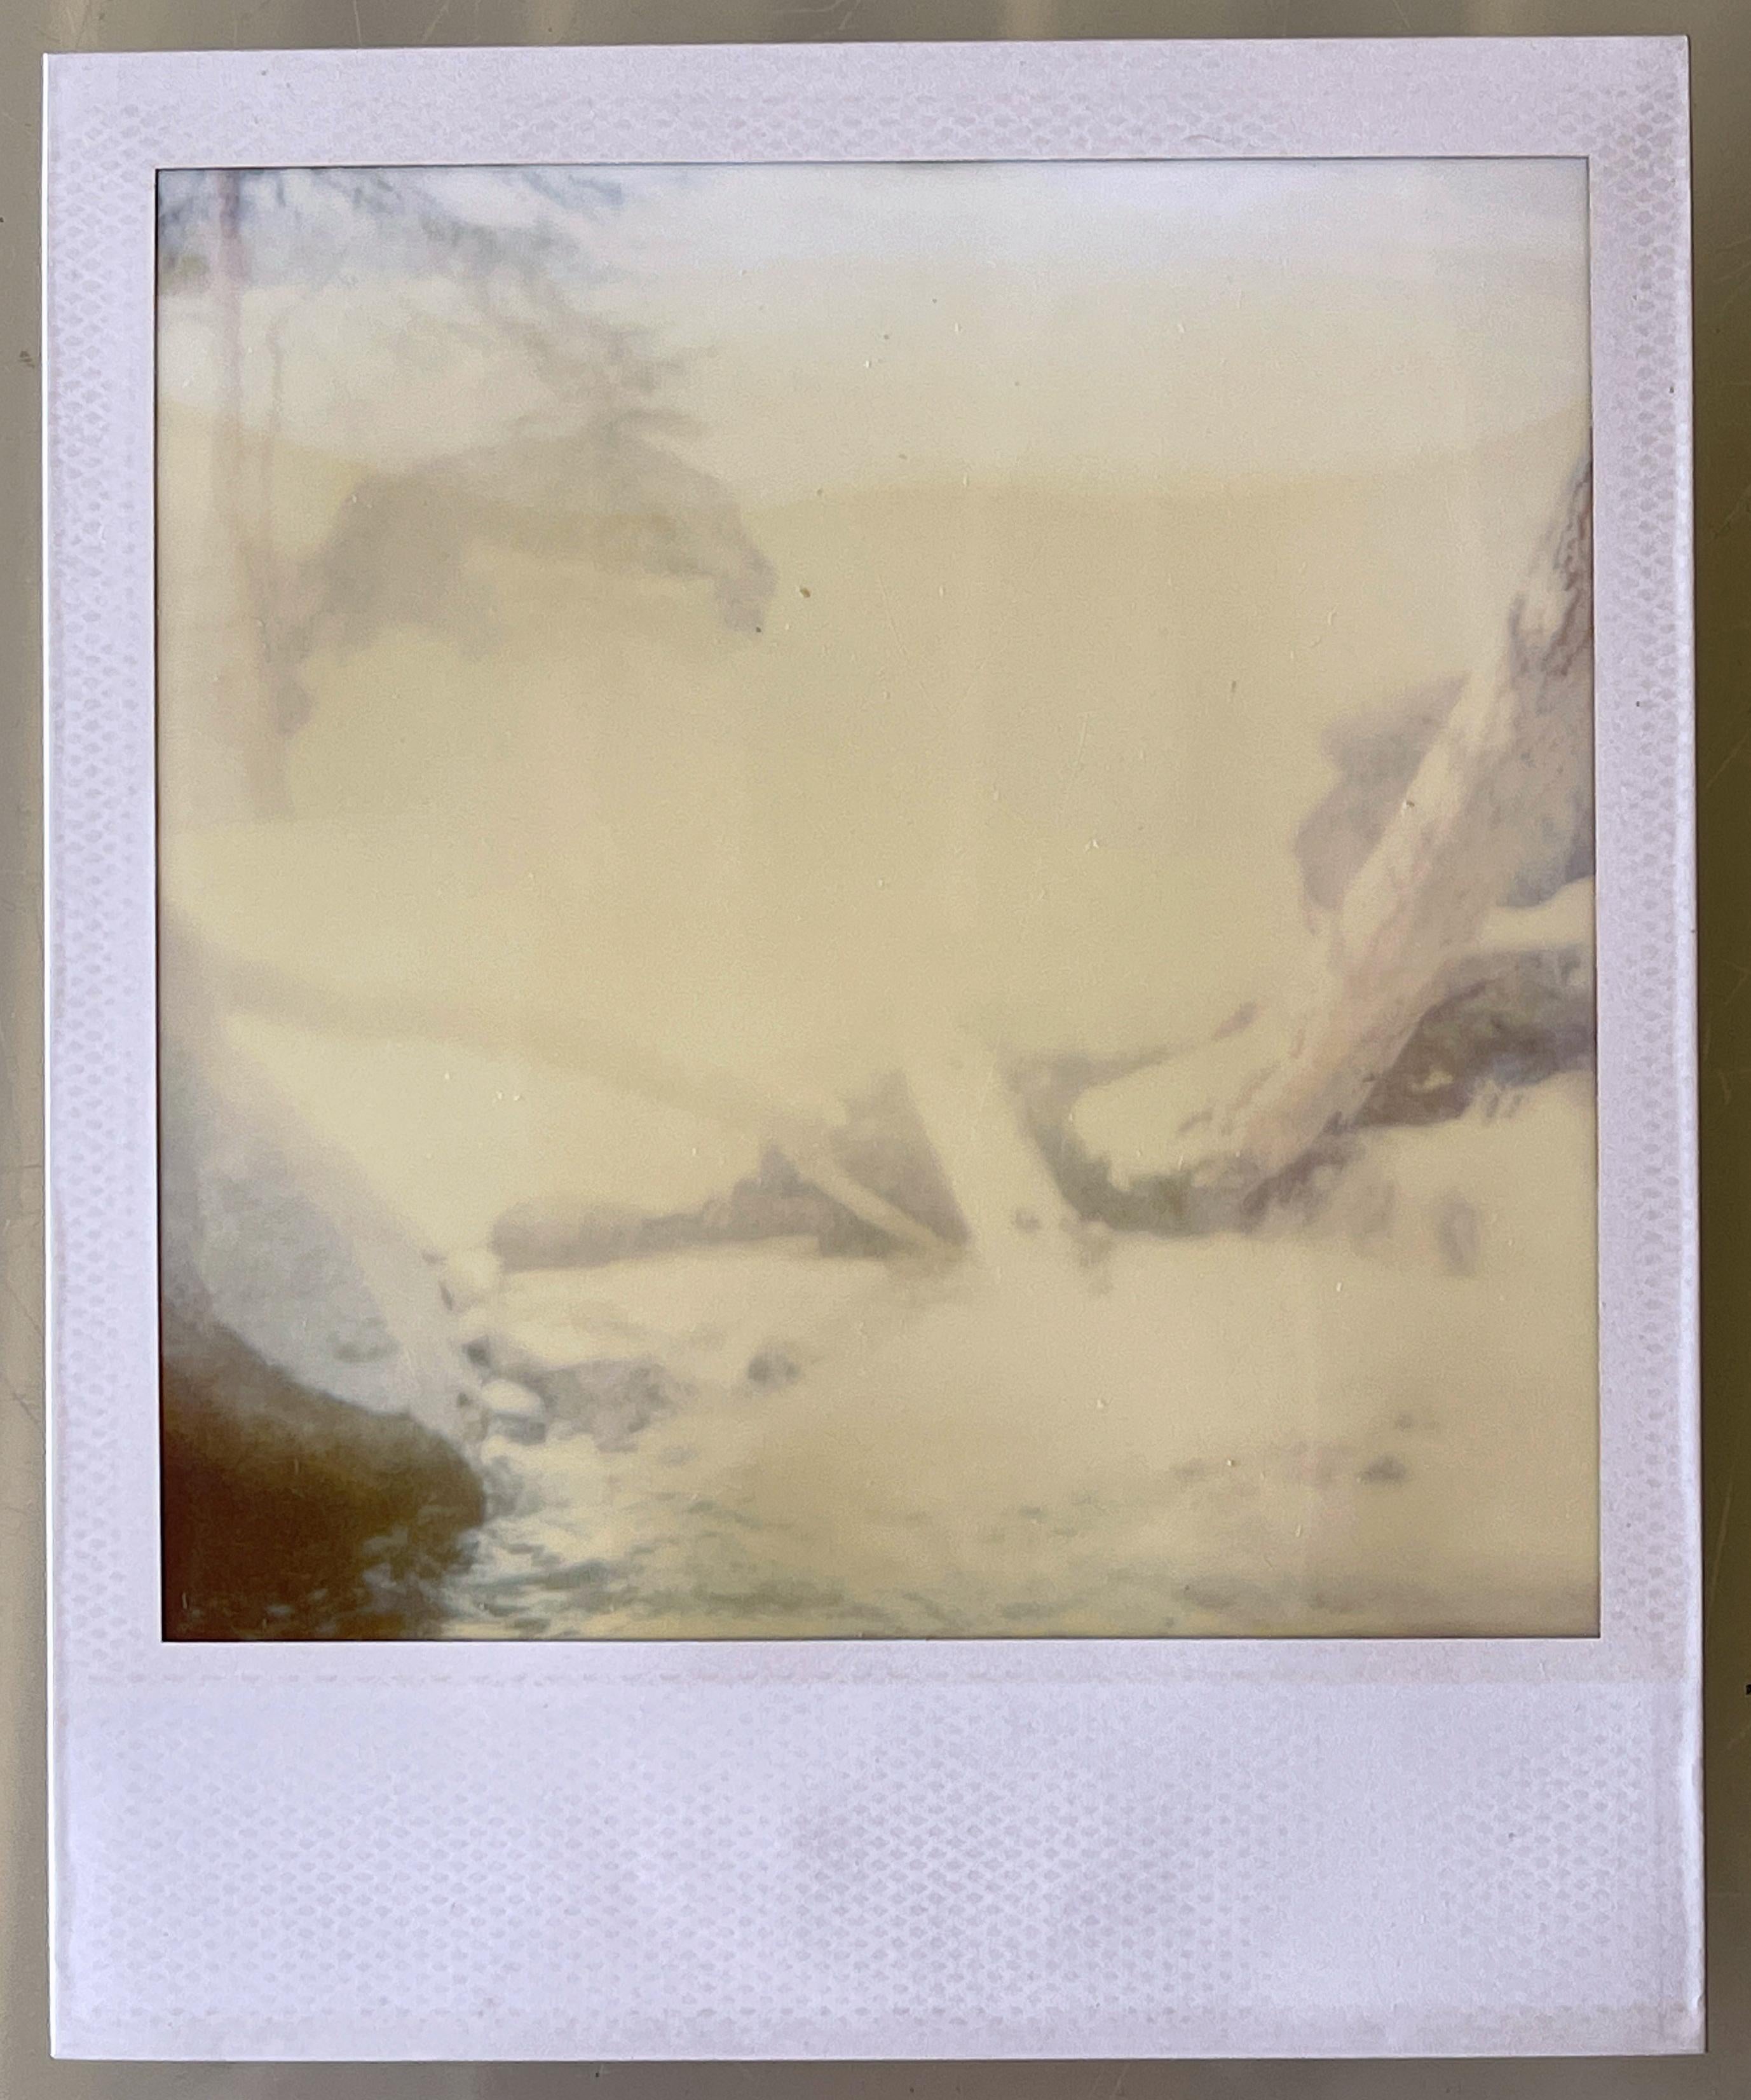 Stefanie Schneider Portrait Photograph - The River (Fairytales) - Original Polaroid Unique Piece